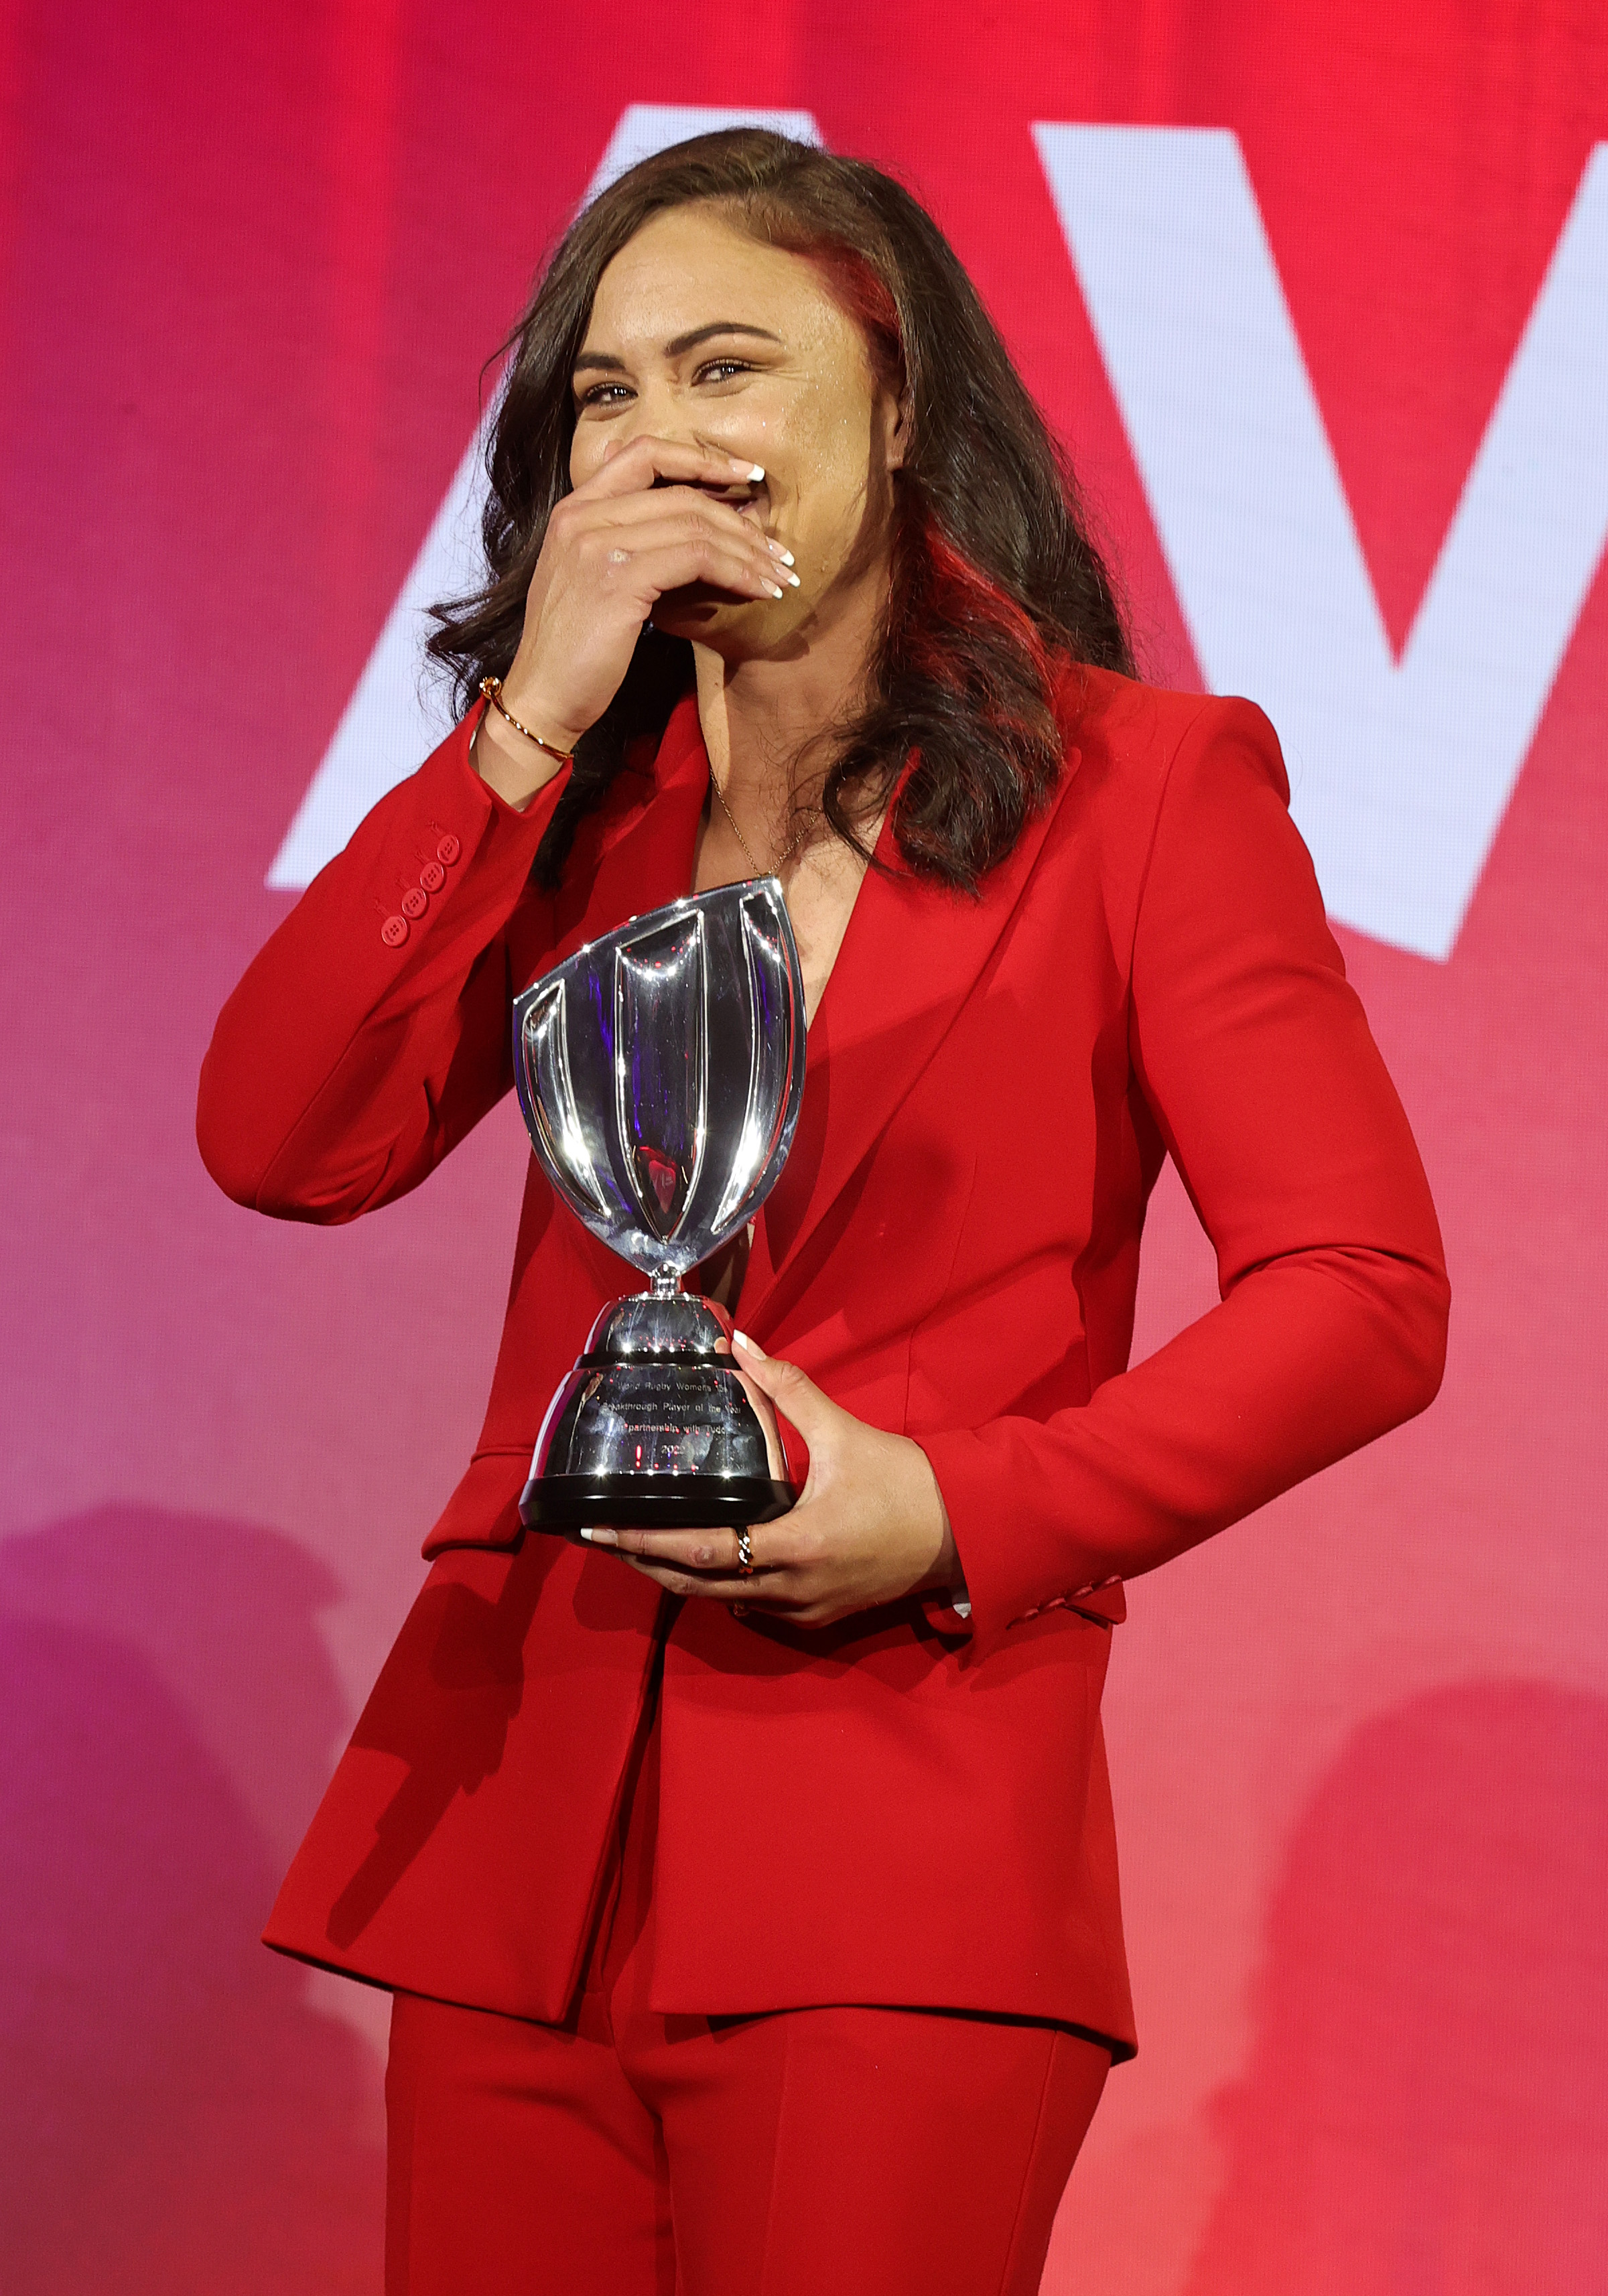 Ruby Tui a offert une deuxième médaille de Coupe du monde après avoir donné l’original à un fan